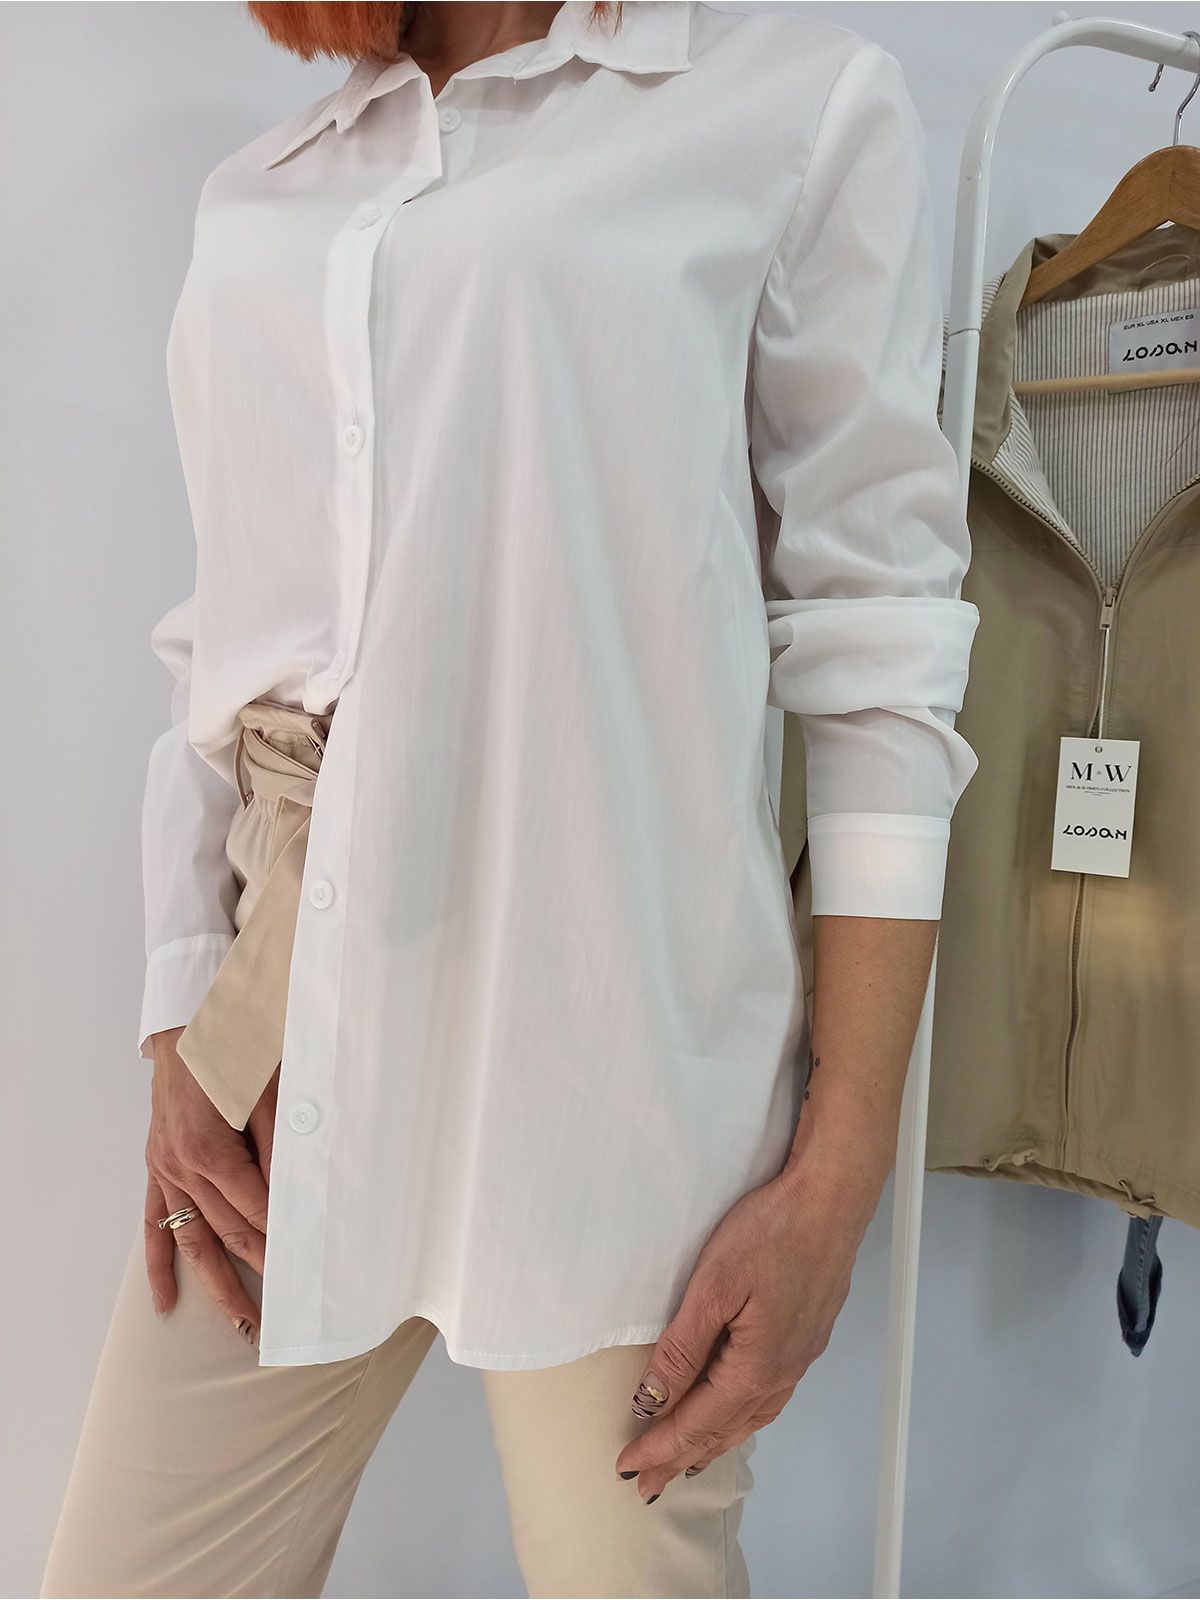 Πουκάμισο κλασσικό μονόχρωμο ελληνικής ραφής λευκό - Plus Size - Casual  Collection - Lonome :: Anima Fashion Store - Γυναικεία, παιδικά, βρεφικά  ρούχα και αξεσουάρ στο Ηράκλειο Κρήτης